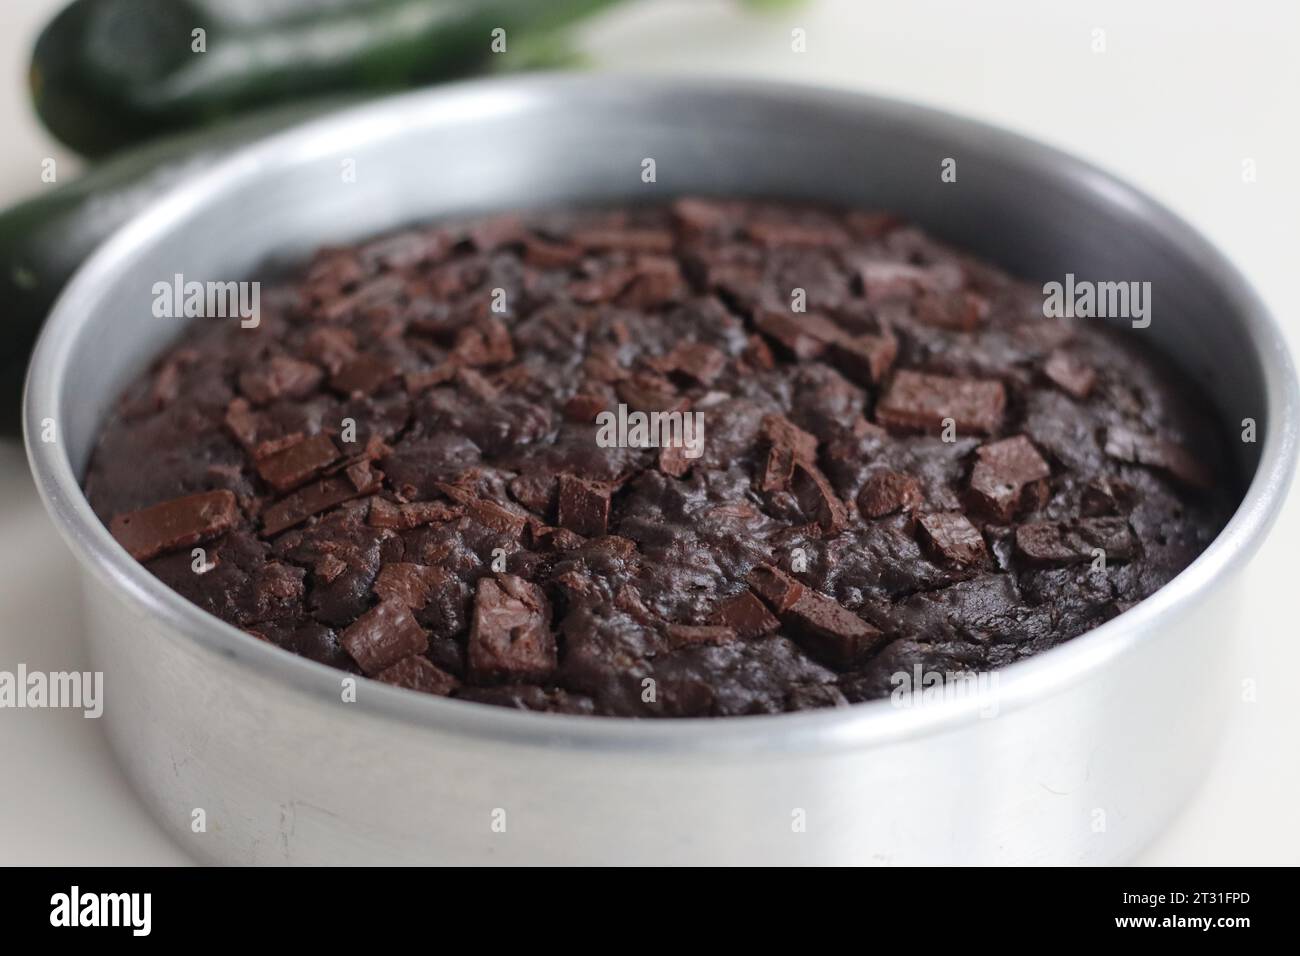 Gâteau au chocolat courgettes de forme ronde à l'intérieur du moule à gâteau. Gâteau au chocolat double humide avec courgettes râpées, poudre de coco, chocolat et pépites de chocolat. Banque D'Images